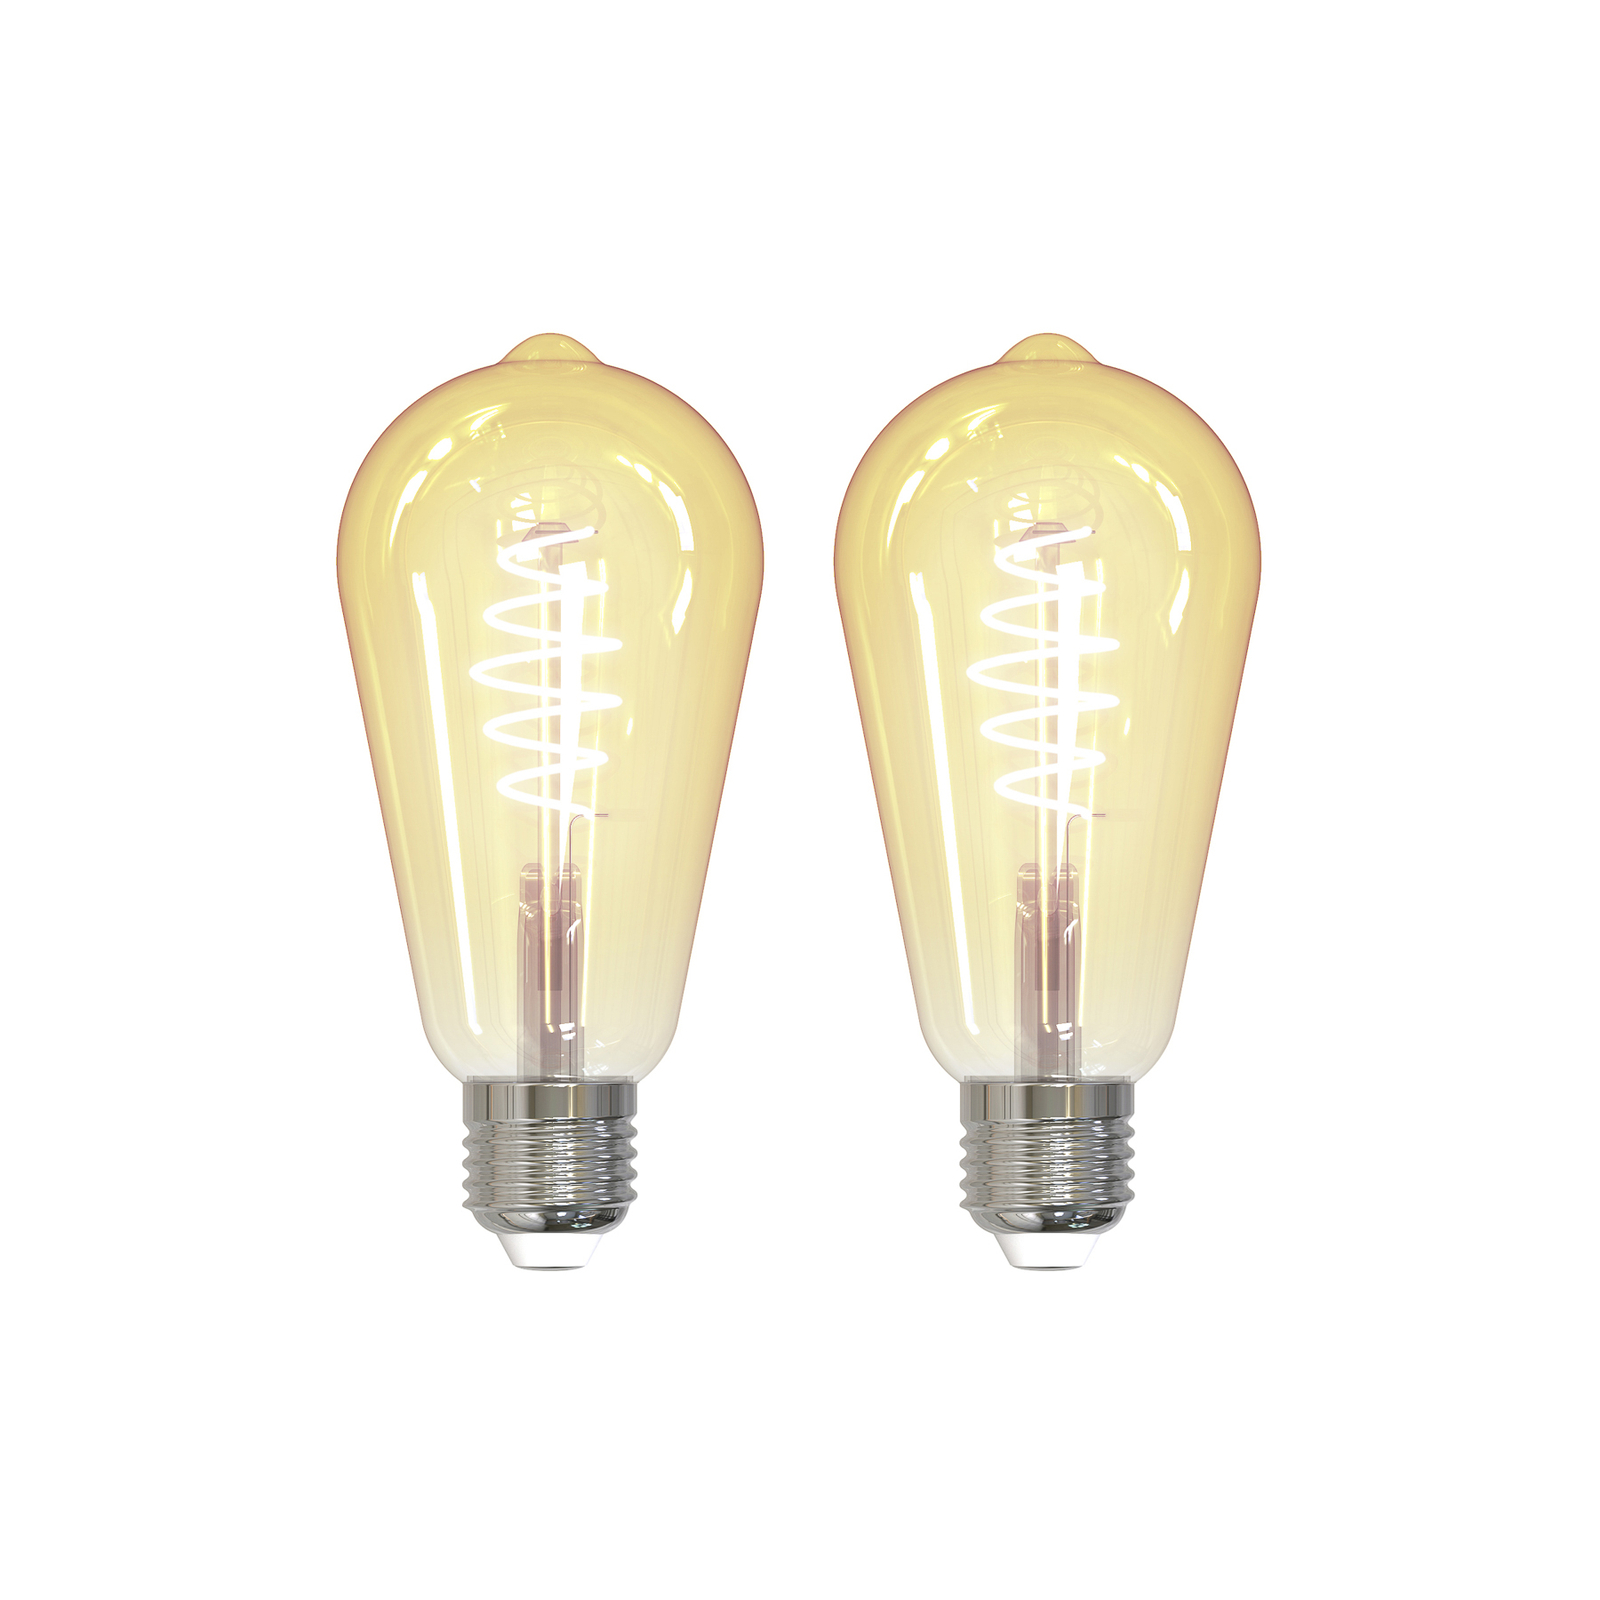 LUUMR Smart LED, set of 2, E27, ST64, 4.9W, amber, clear, Tuya